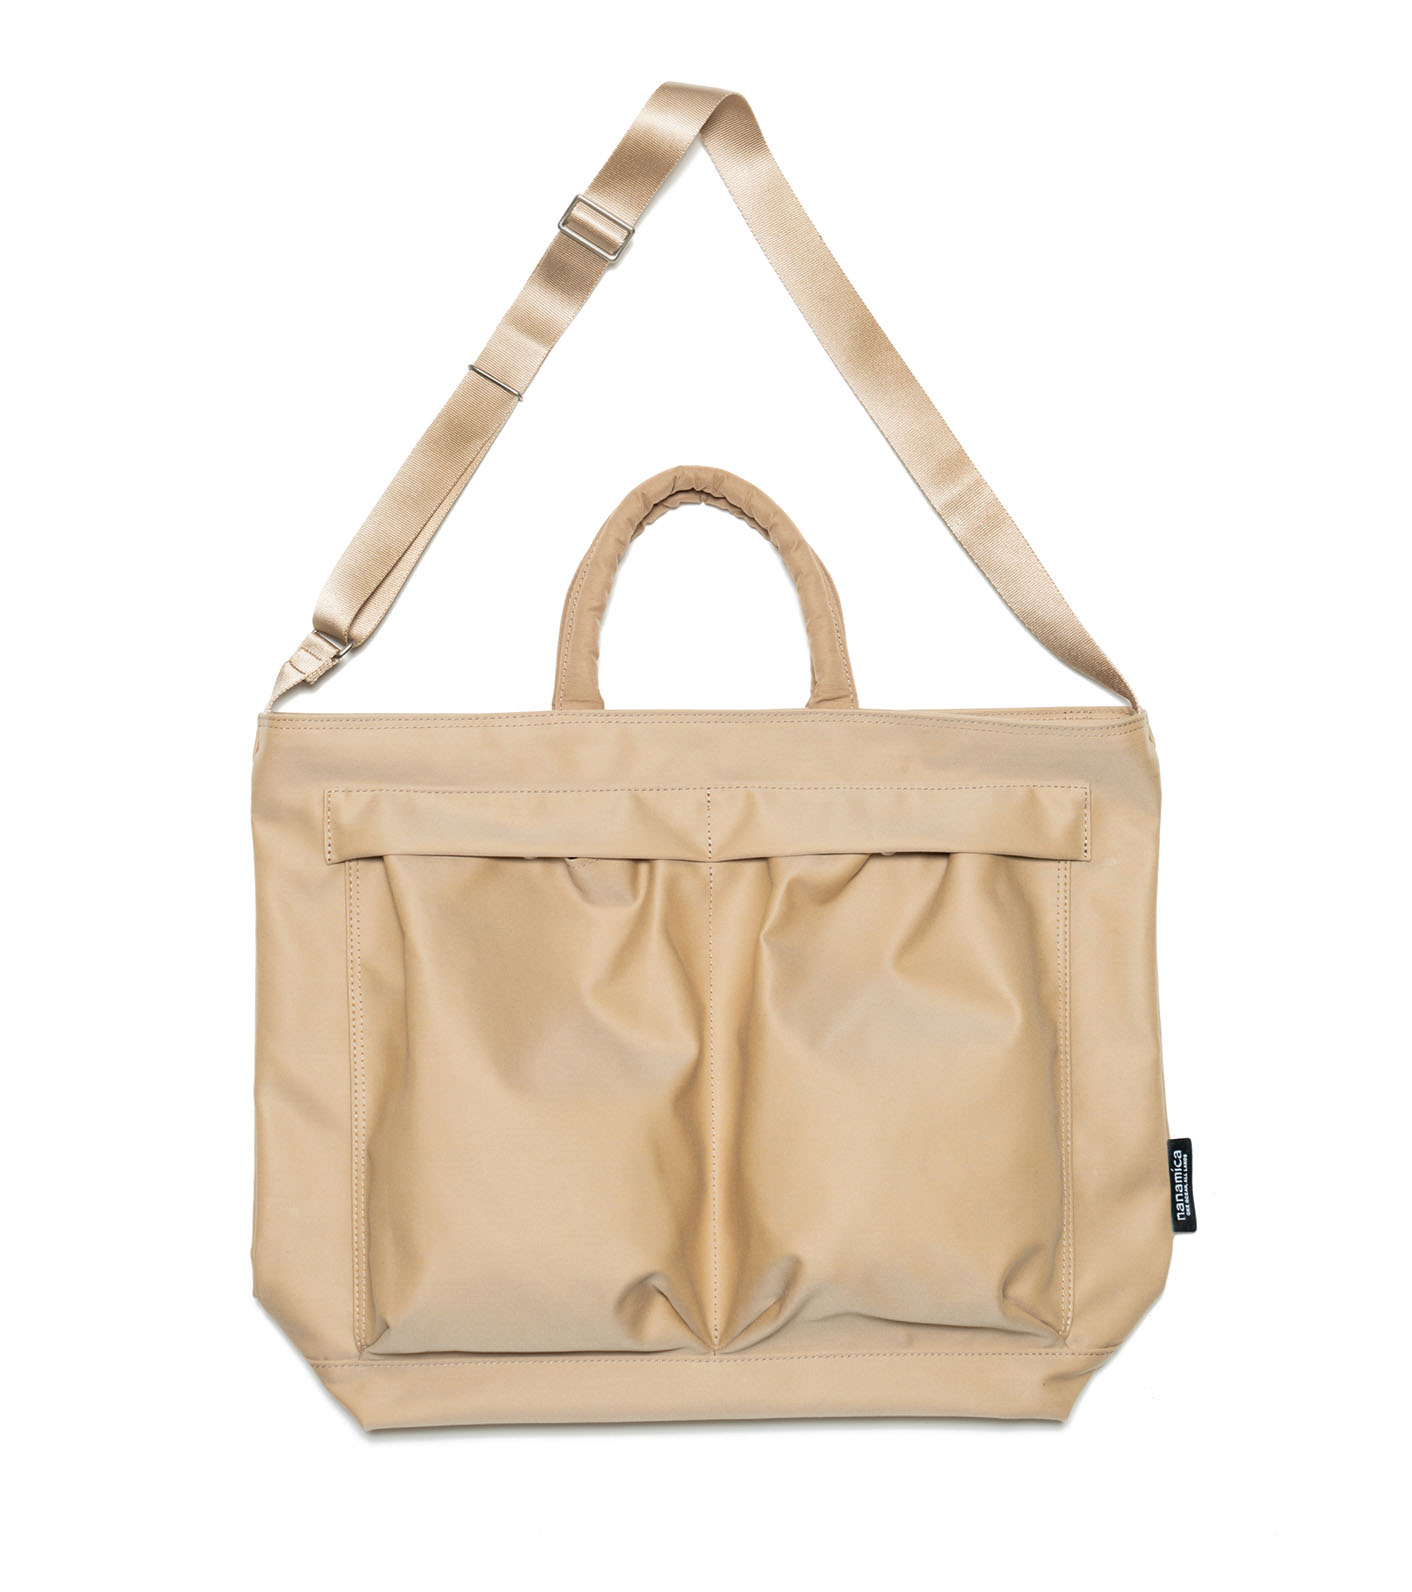 新品nanamica Small Tote Bag